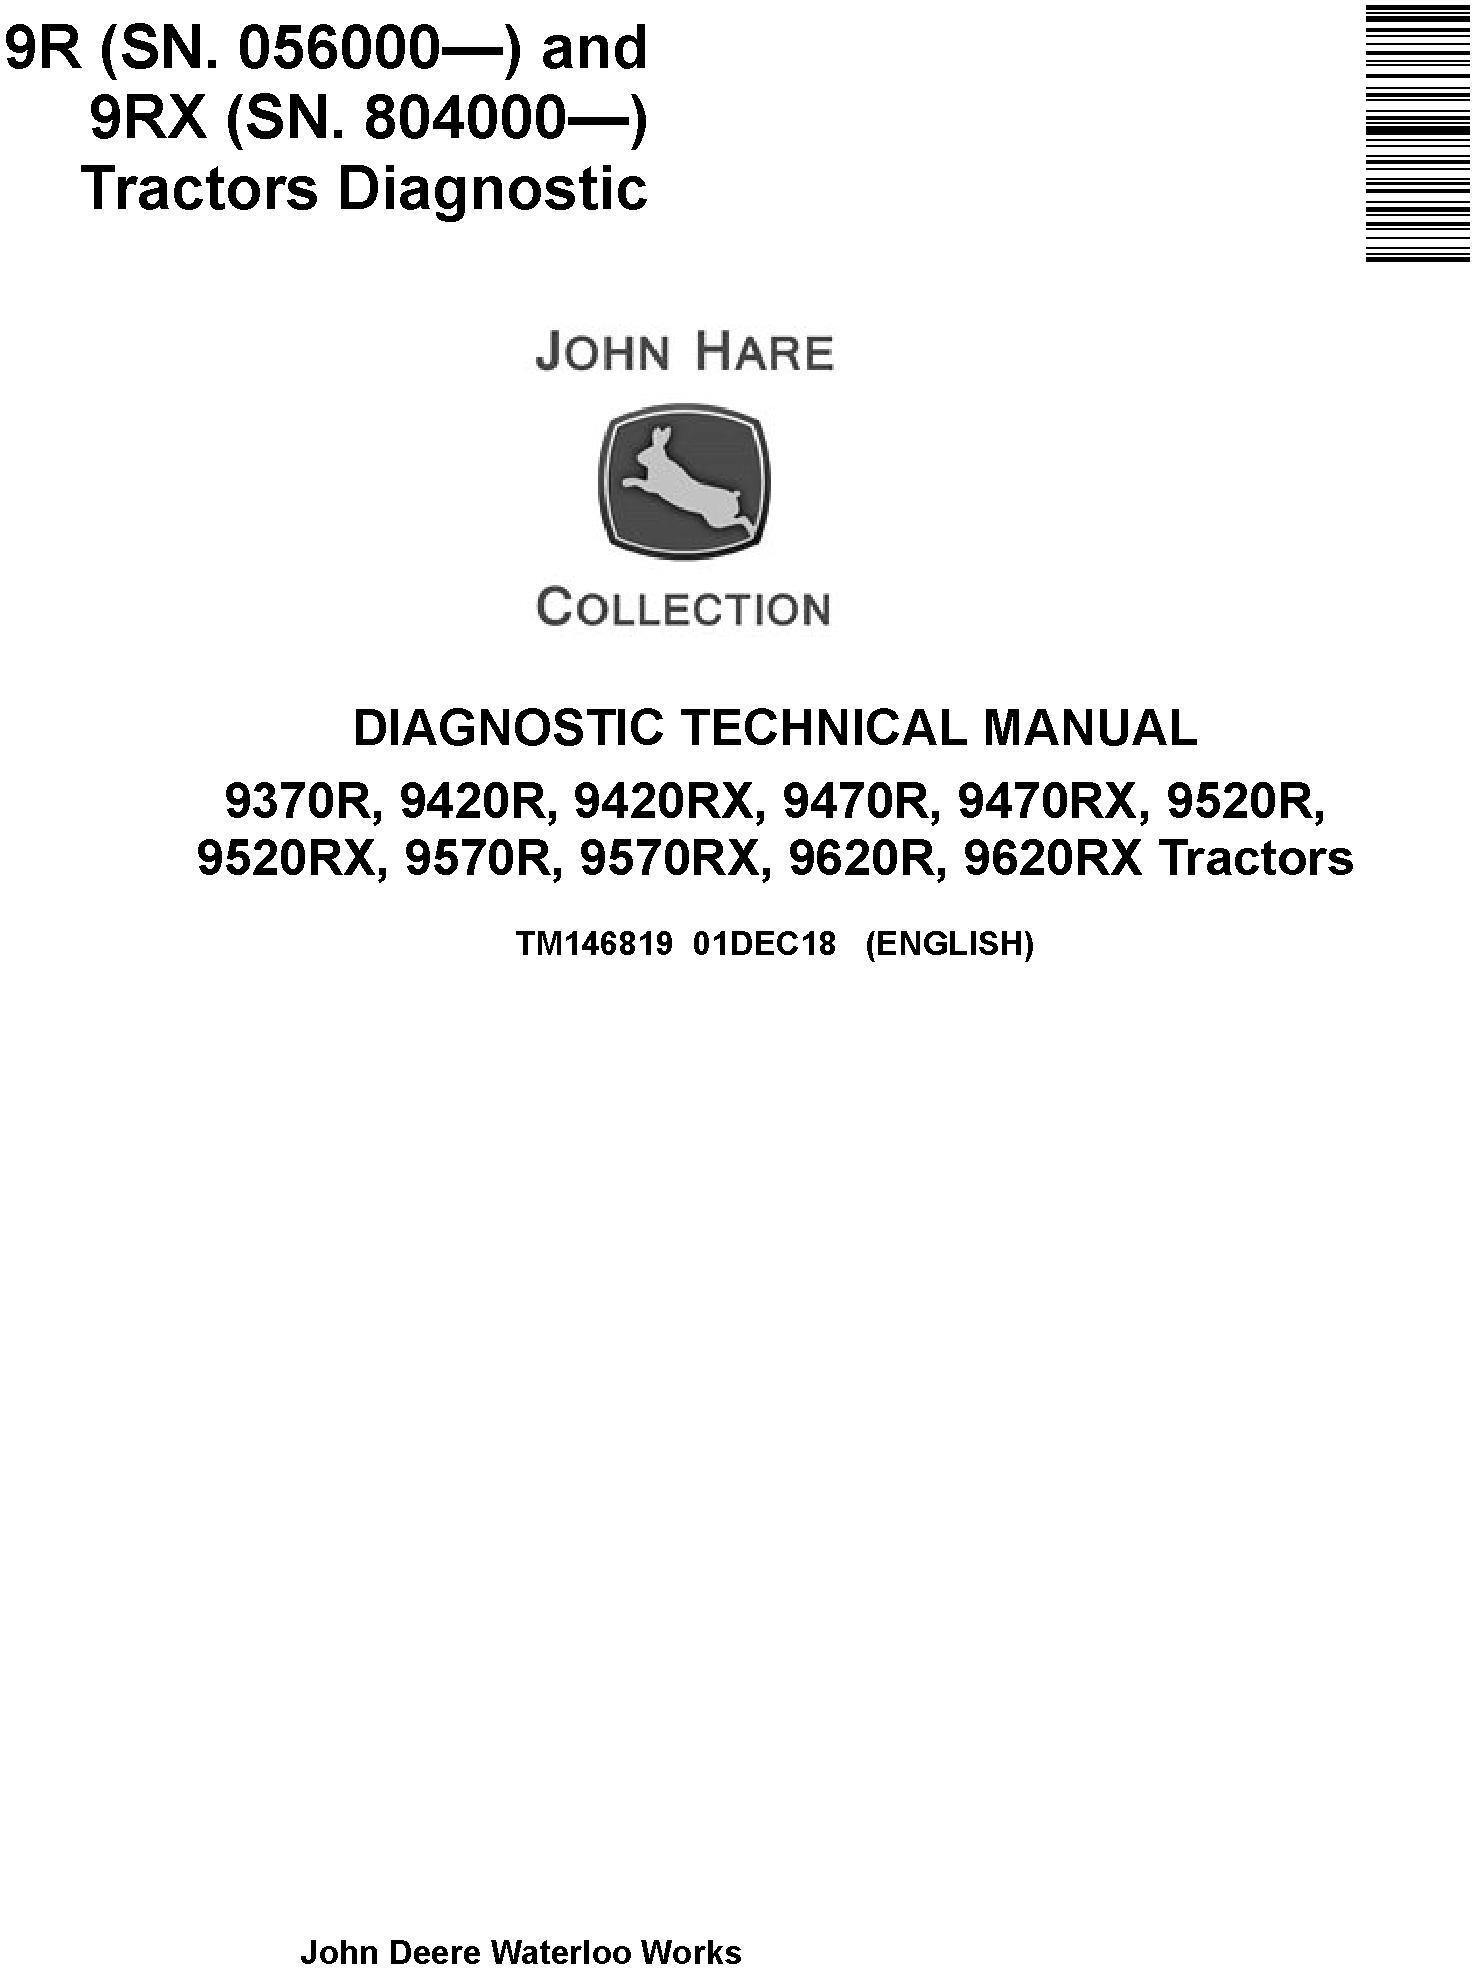 John Deere 9370R 9420R/RX 9470R/RX 9520R/RX 9570R/RX 9620R/RX Tractors Diagnostic Manual (TM146819) - 19092